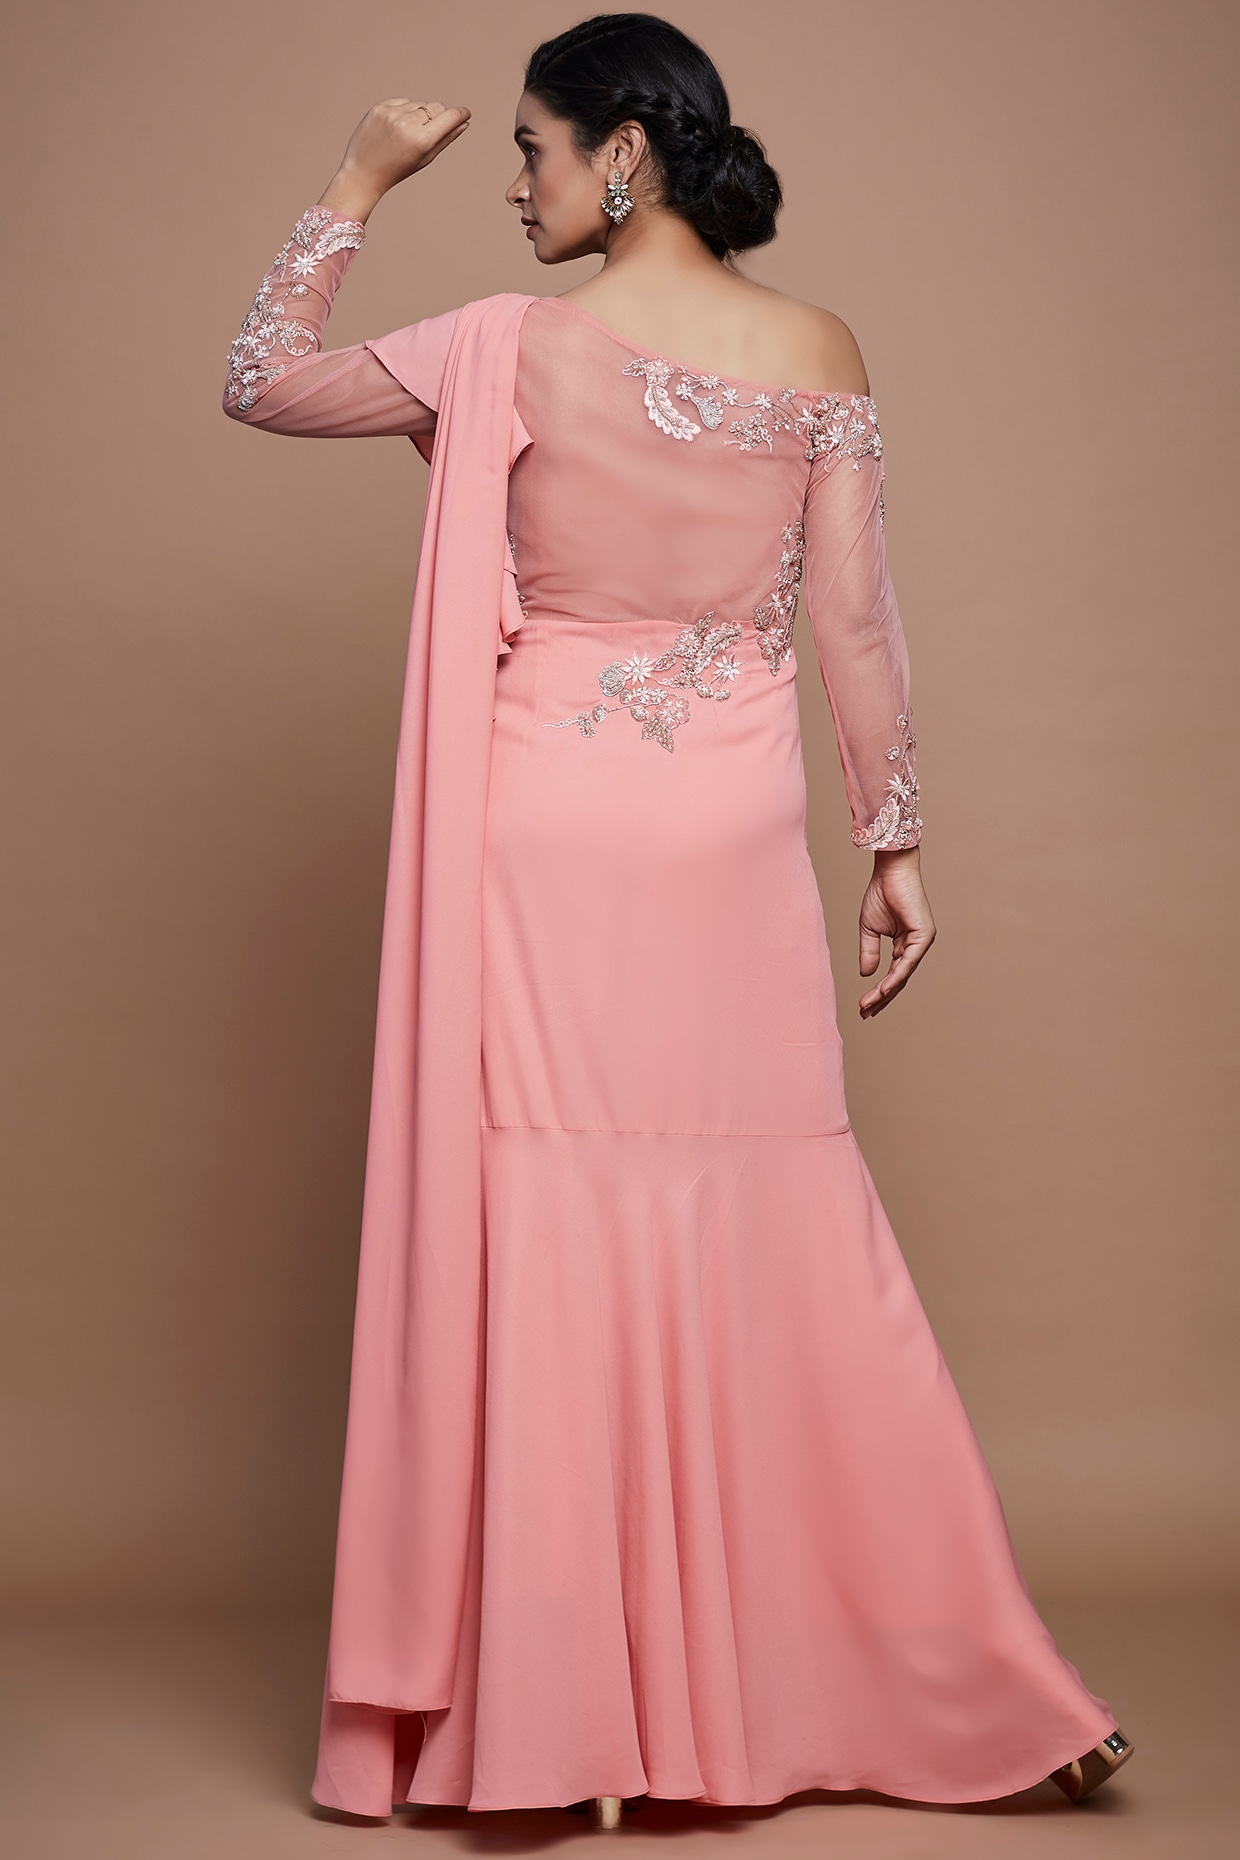 beautypic.xyz | Stylish sarees, Saree gown, Saree dress